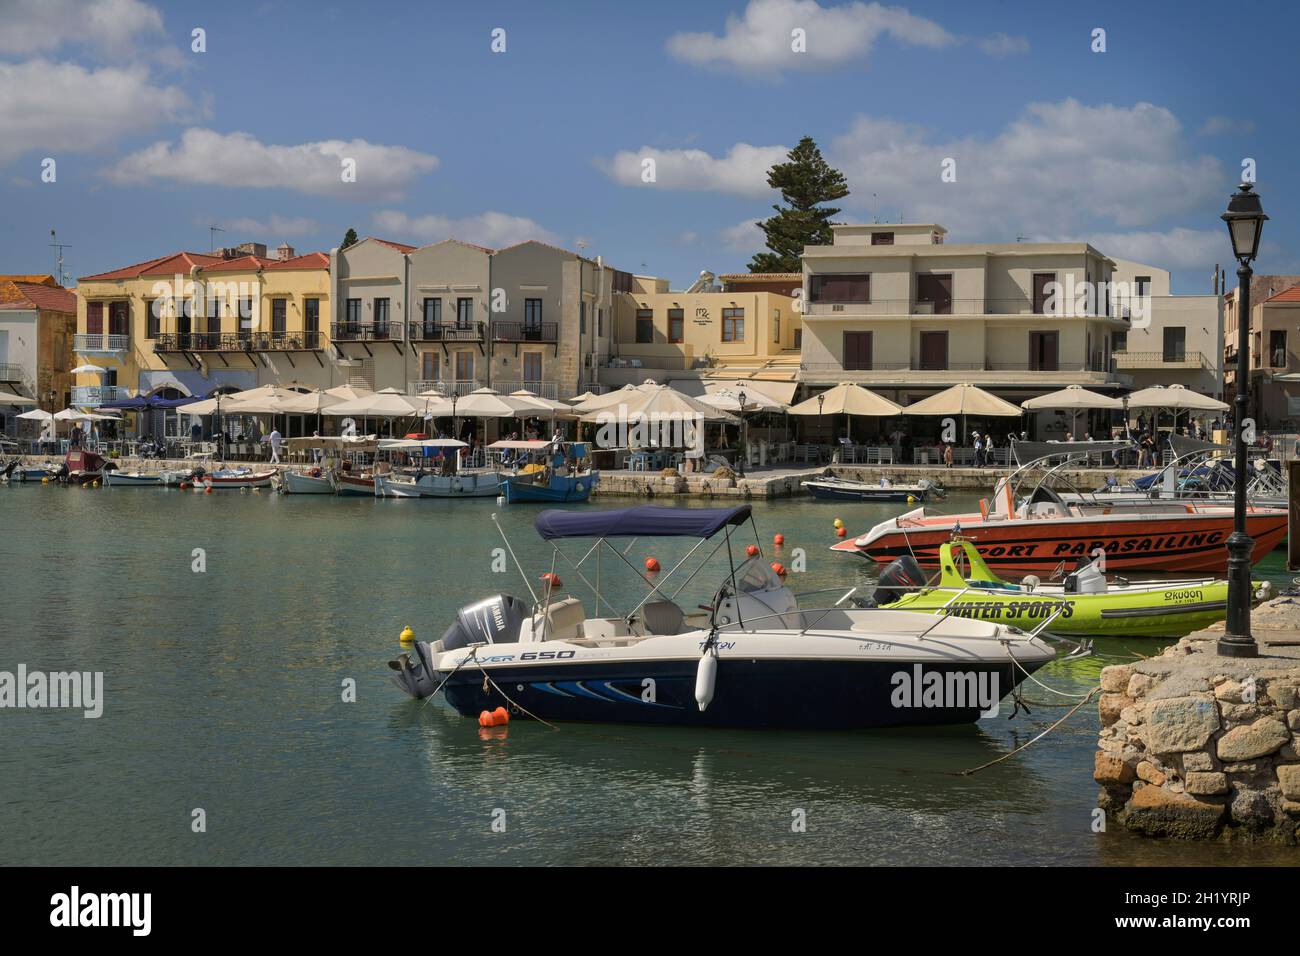 Venezianischer Hafen, Rethymno, Kreta, Griechenland Foto Stock